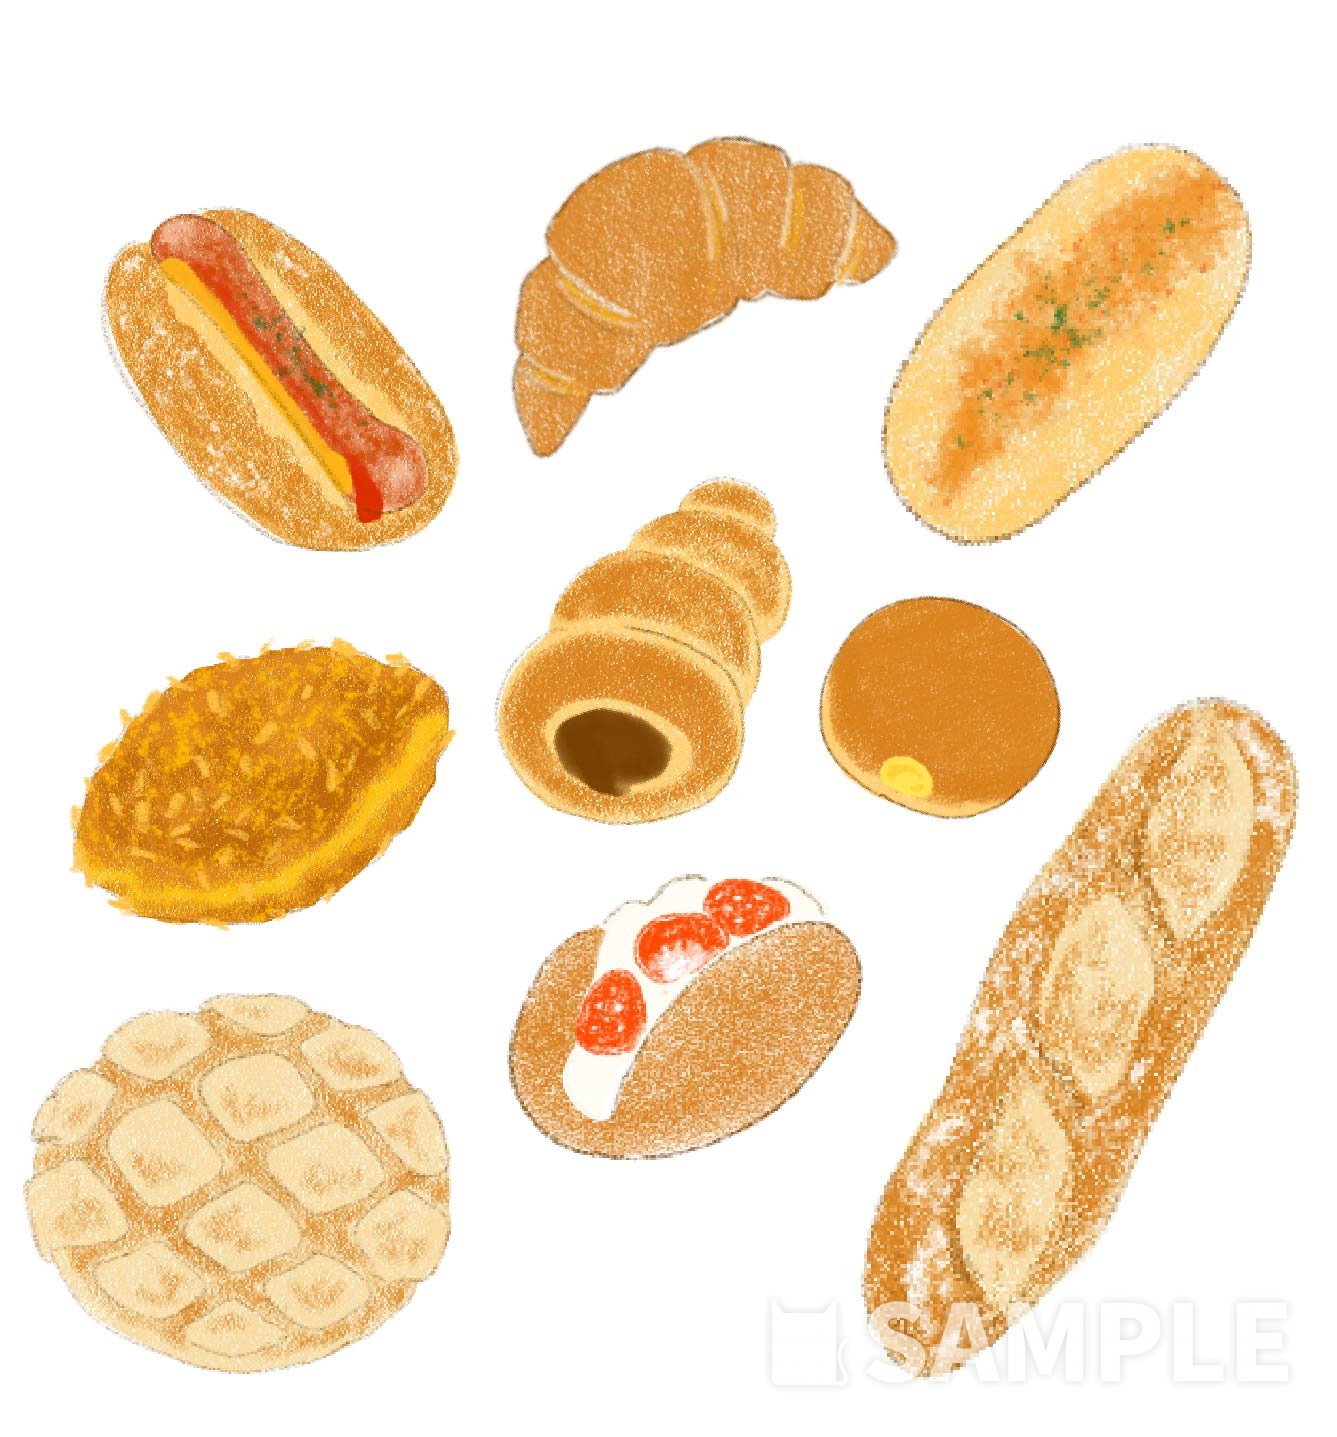 おいしそうなパン 食べ物のイラスト描きます イラスト制作依頼はタノムノ